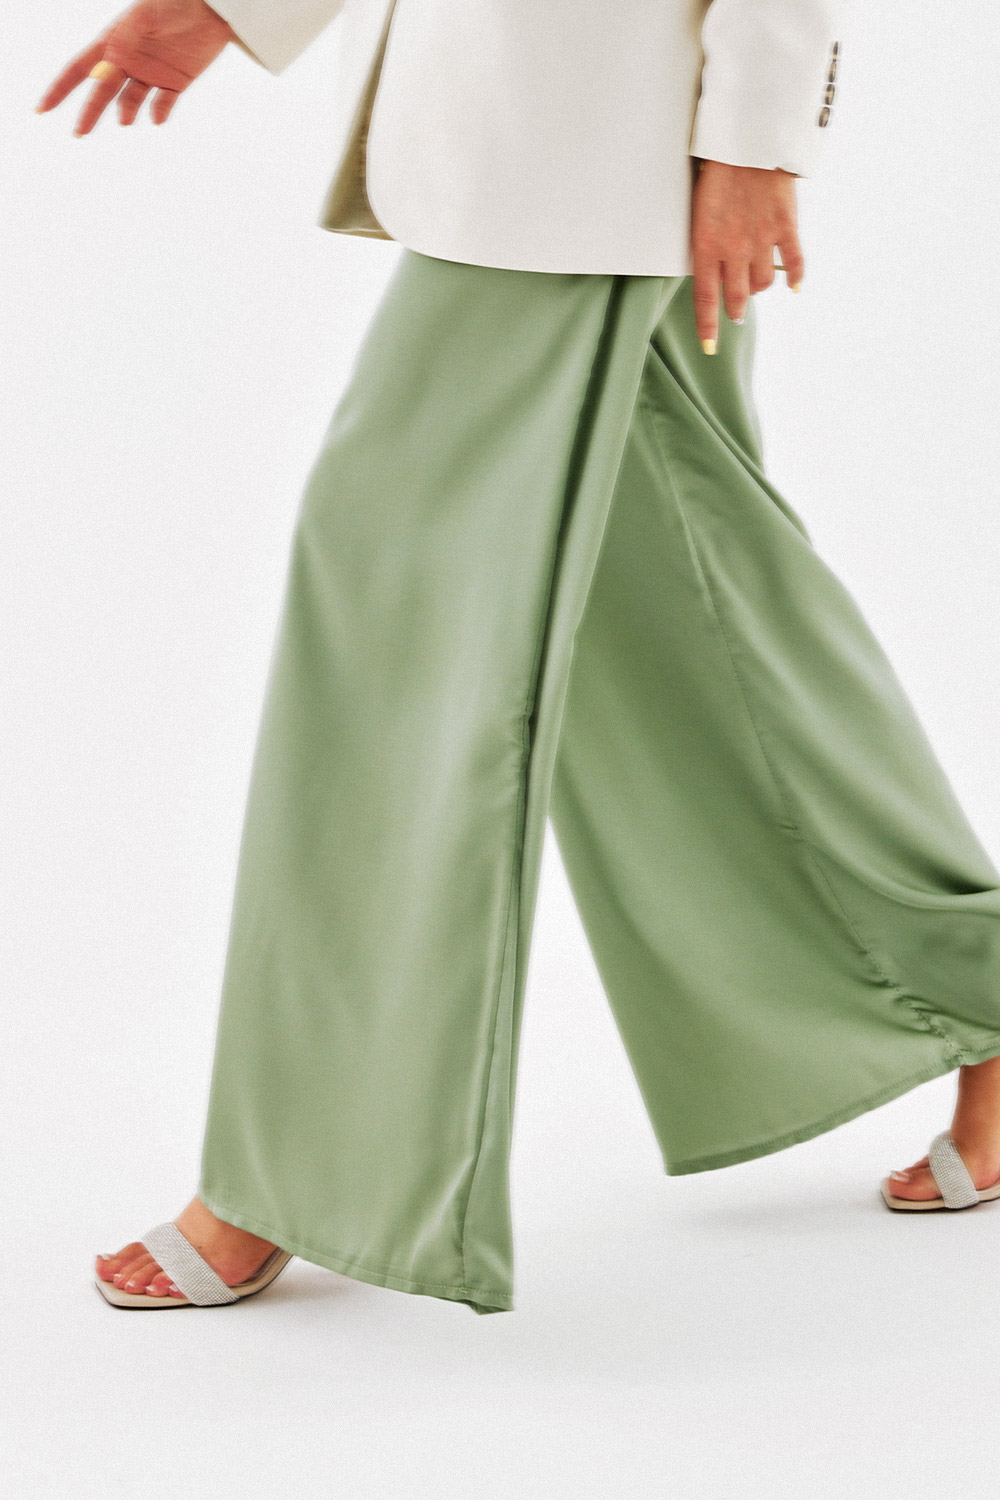 Beli Lastikli Saten Dokulu Salaş Yeşil saten Kadın Denim / Pantolon